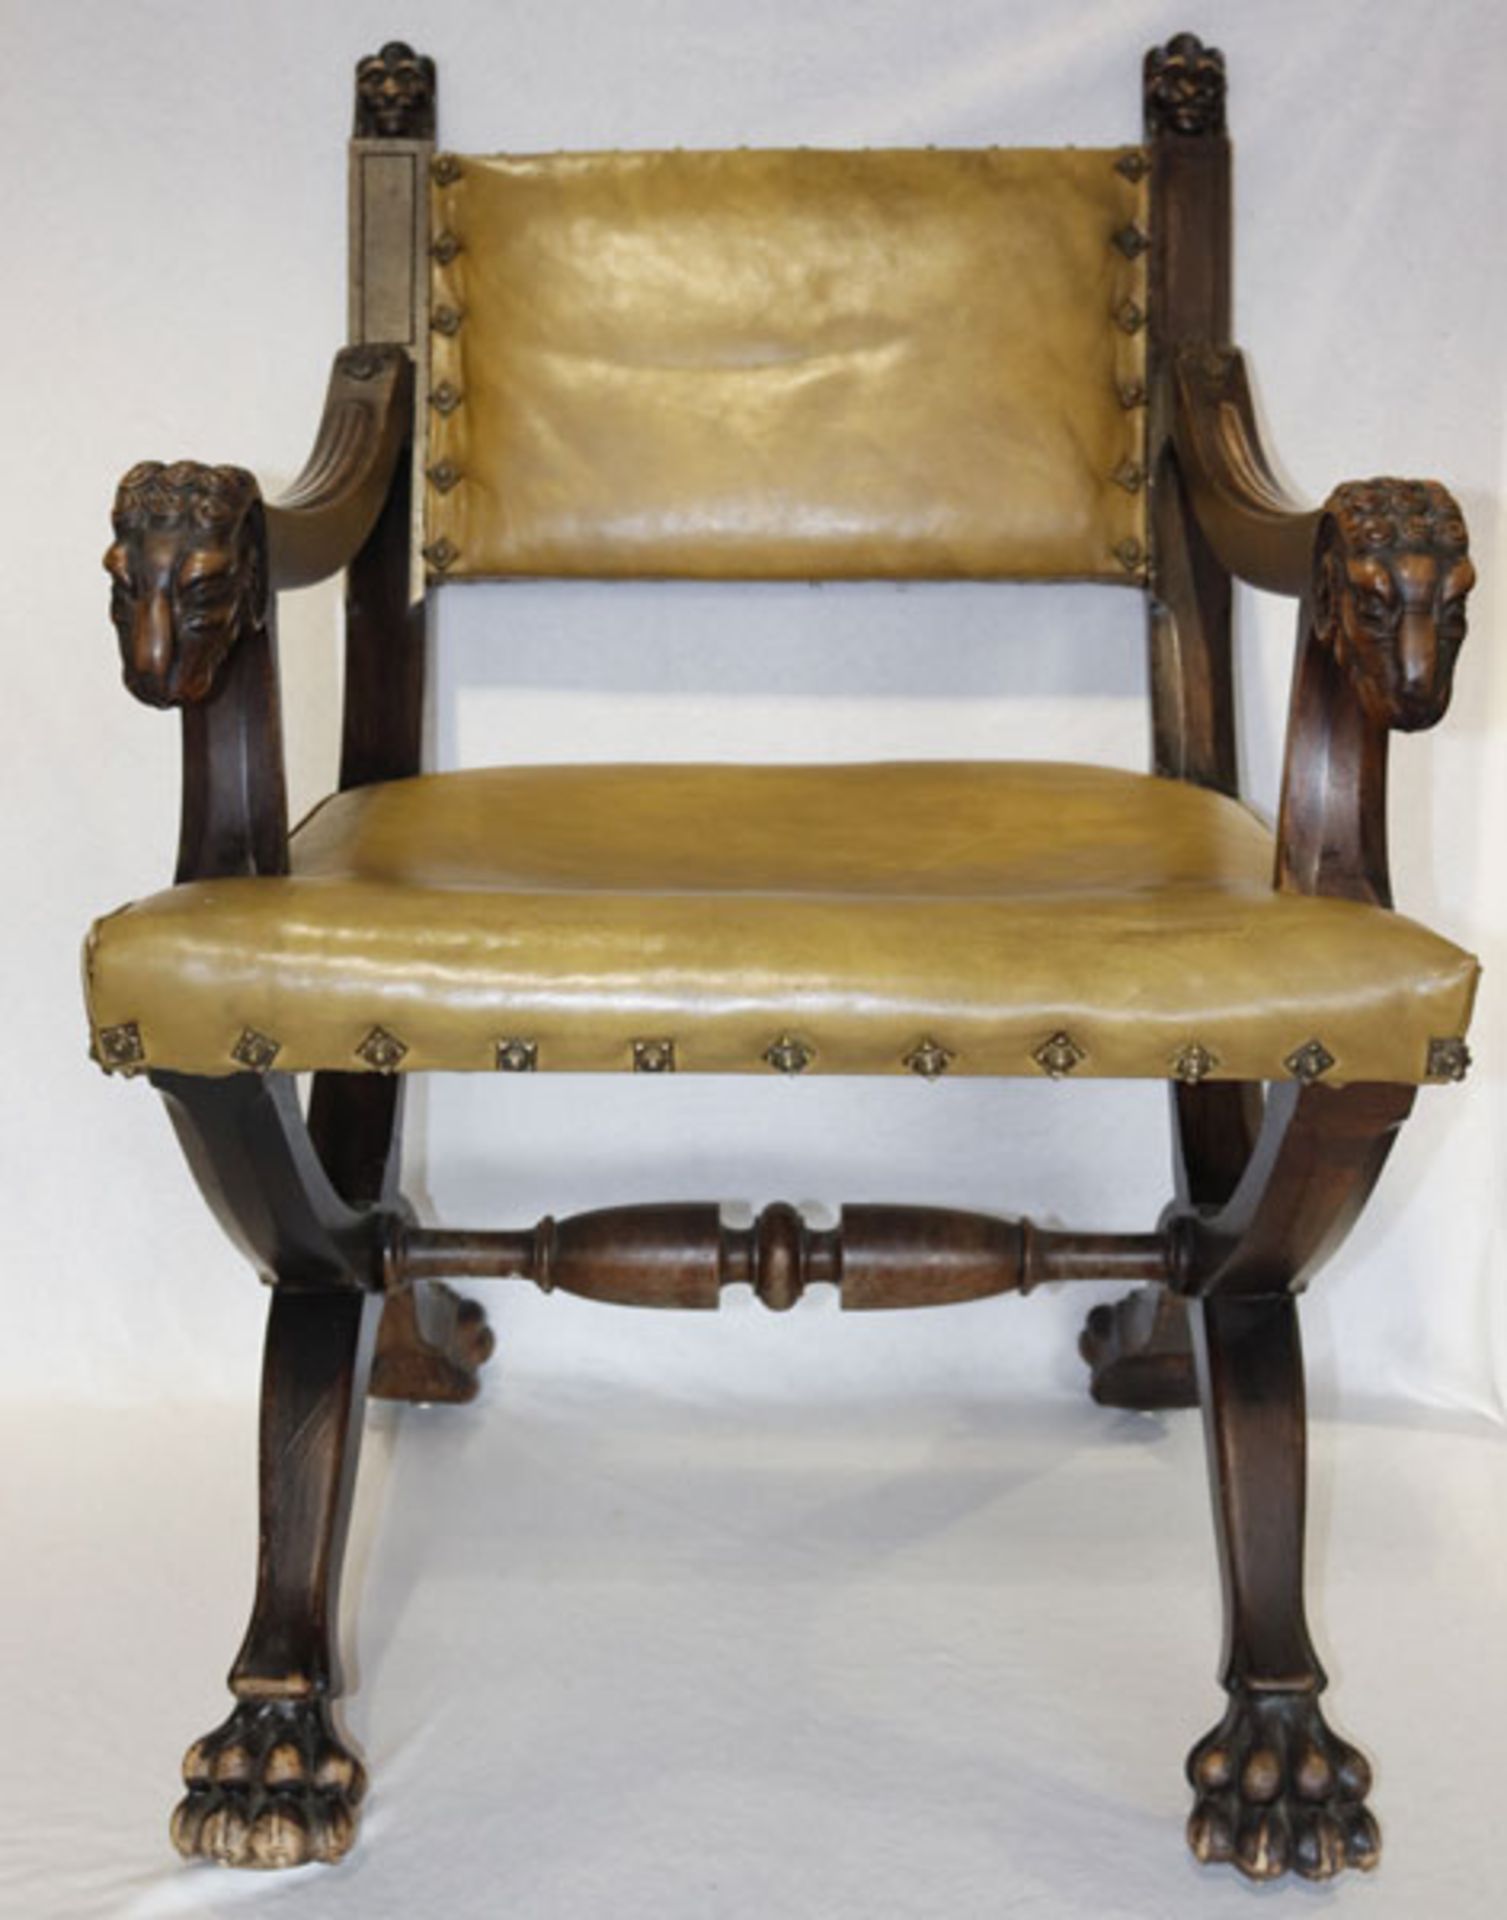 Kreuzbein-Armlehnstuhl, Tatzenfüße, Sitz und Lehne gepolstert und mit Leder bezogen, H 94 cm, B 61